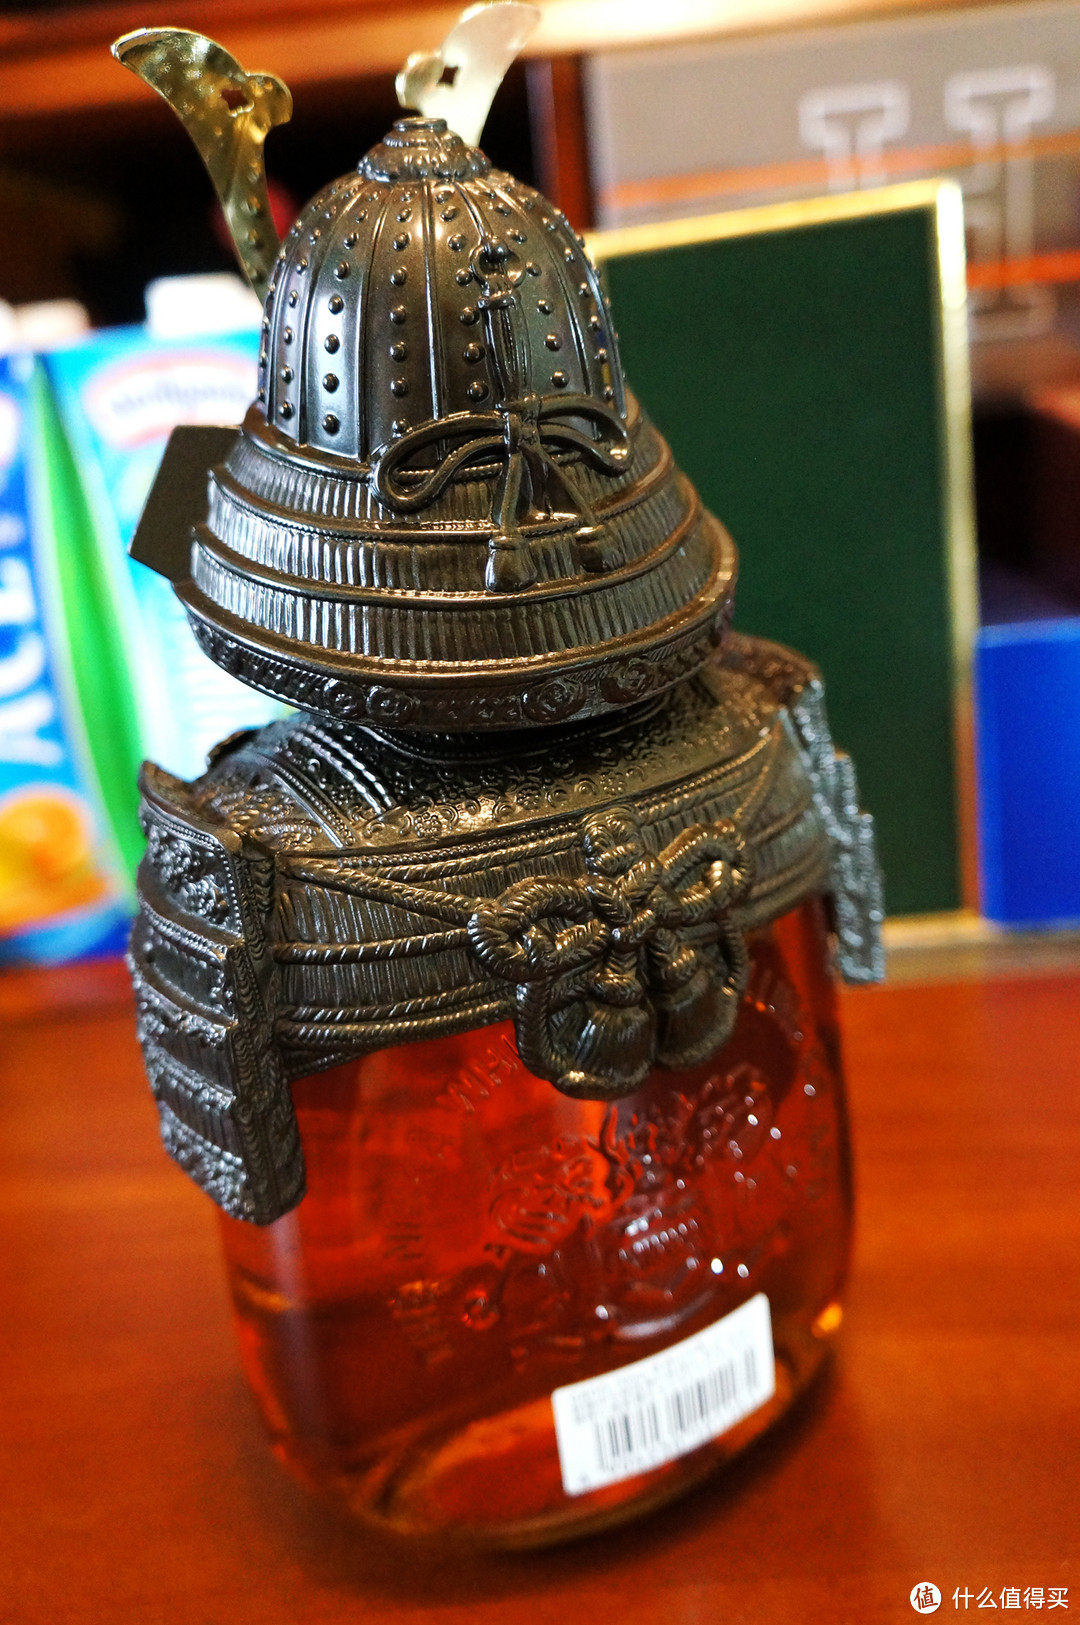 #本站首晒# 酒瓶控的必选收藏 — Nikka 余市 G&G 武士限量纪念珍藏版 开箱